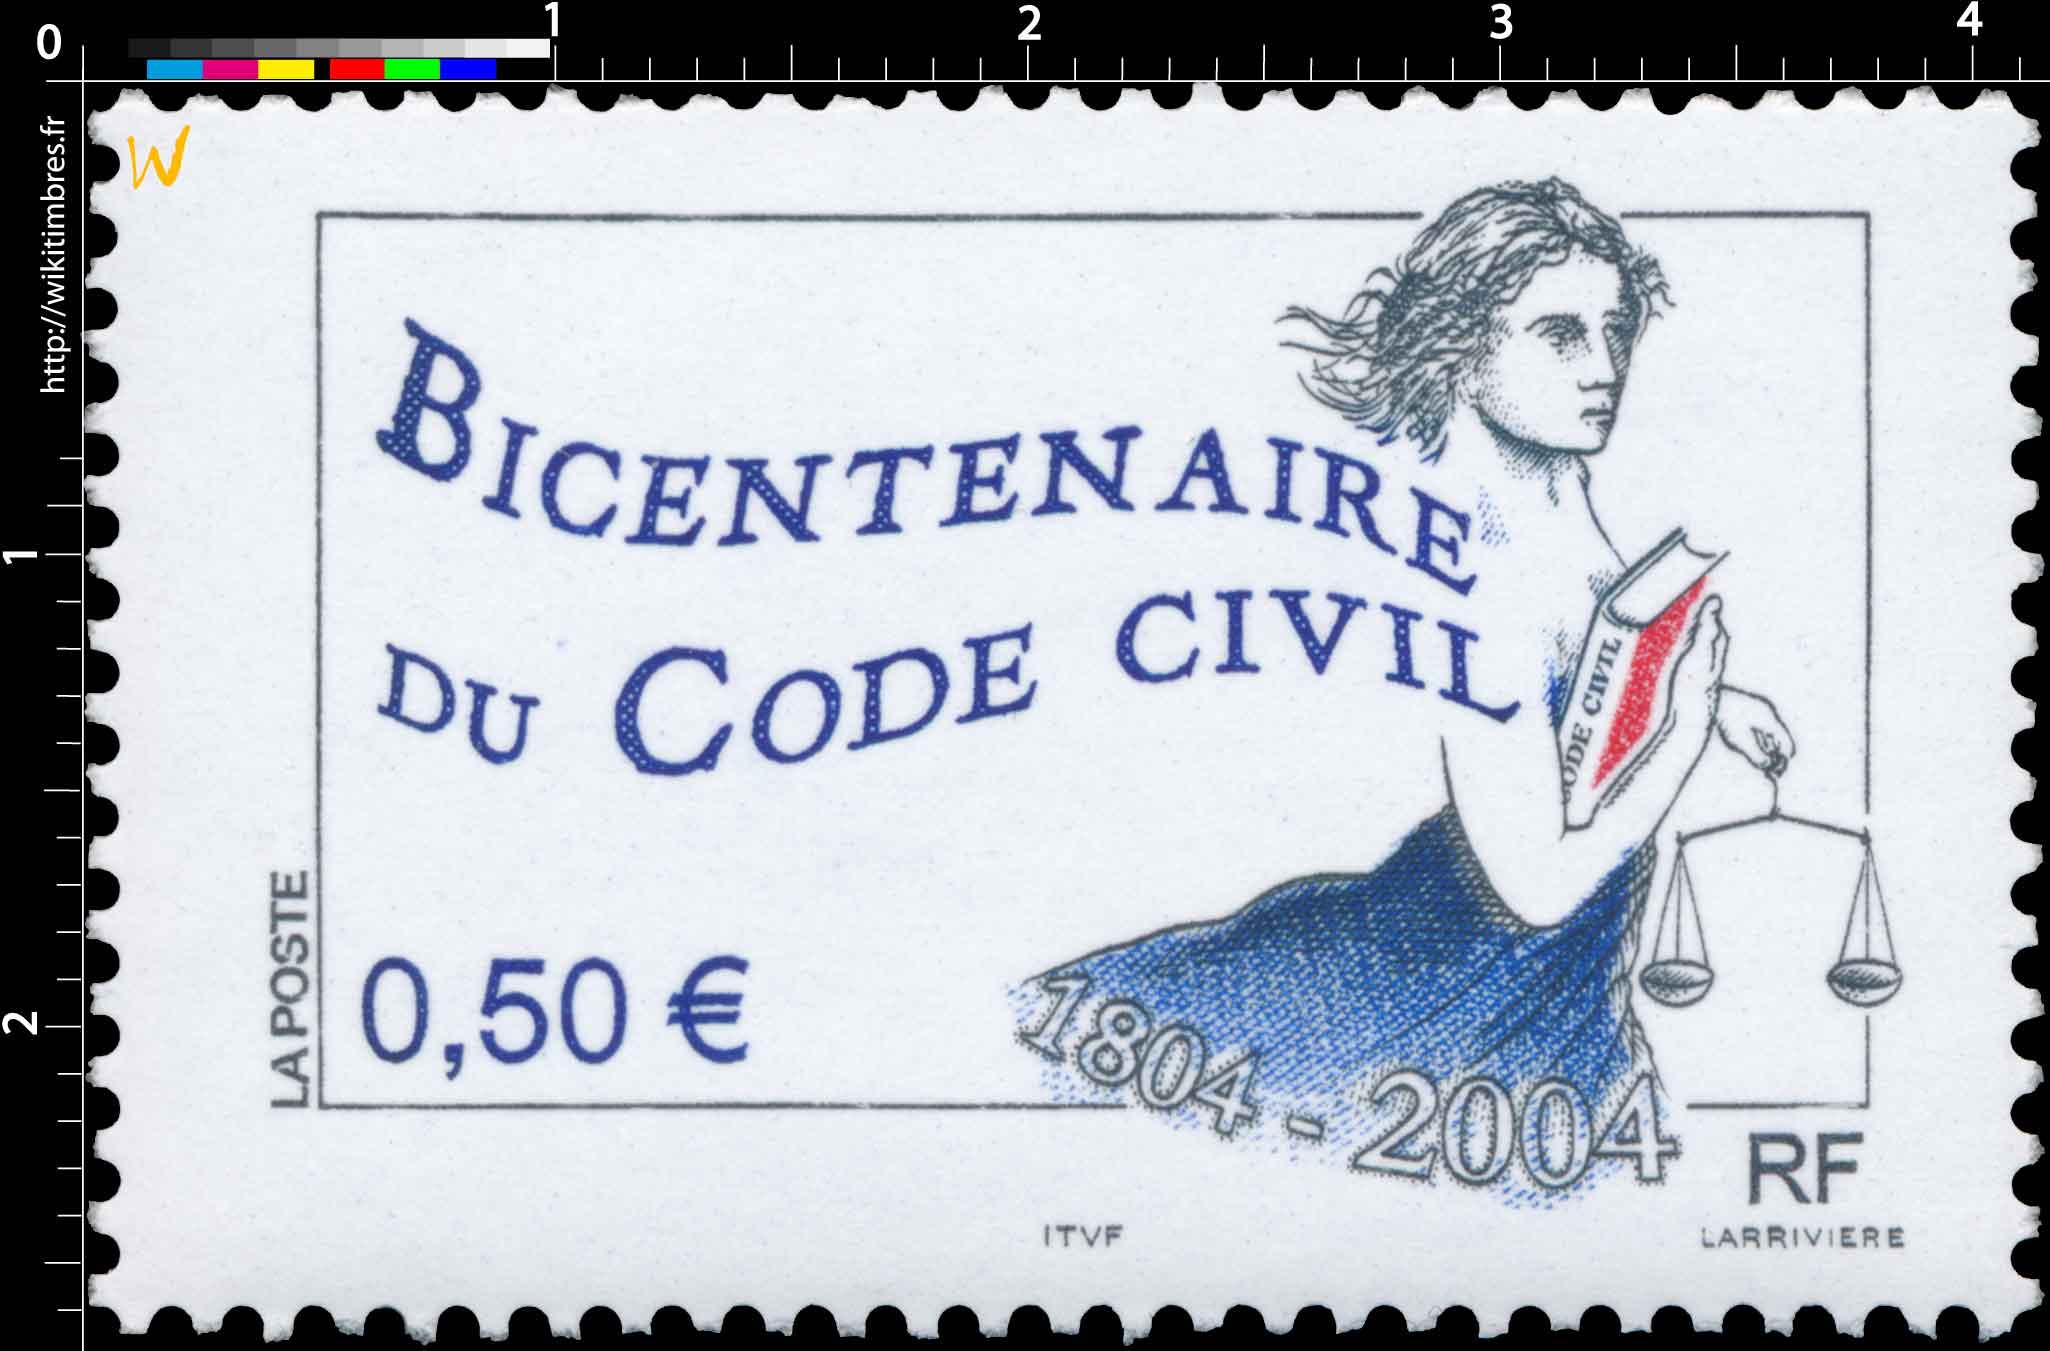 BICENTENAIRE DU CODE CIVIL 1804 - 2004